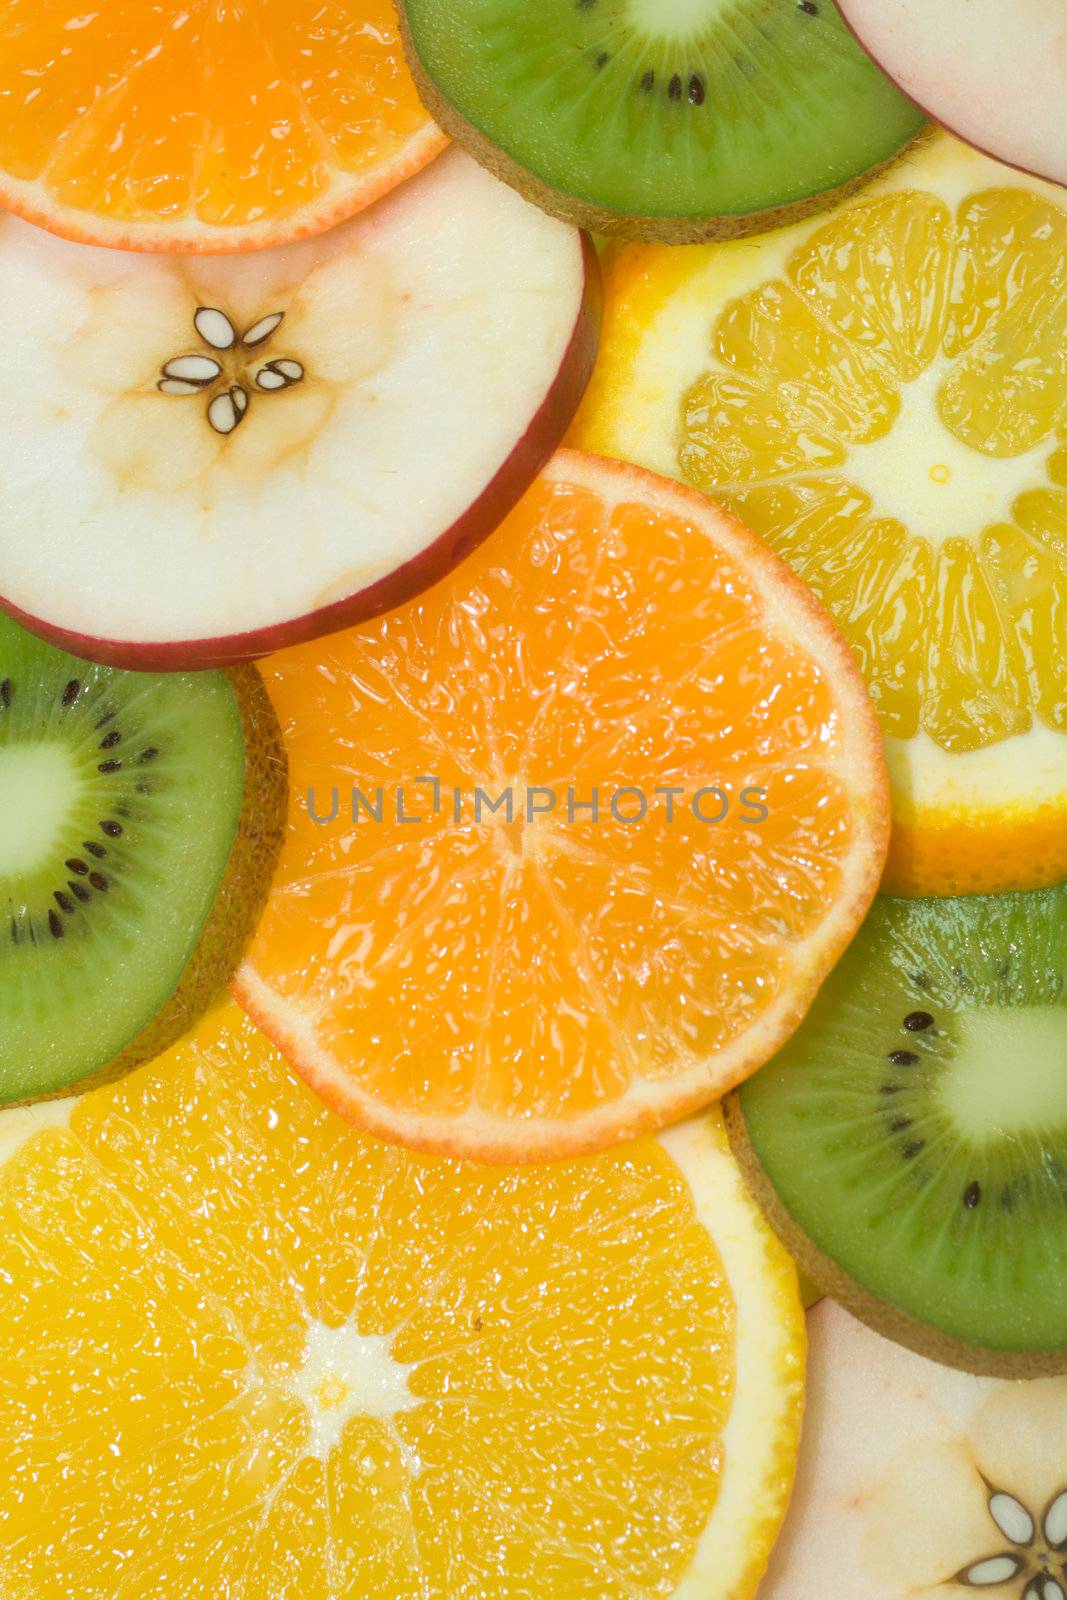 fruits background from slices kiwi, apple, tangerine and orange